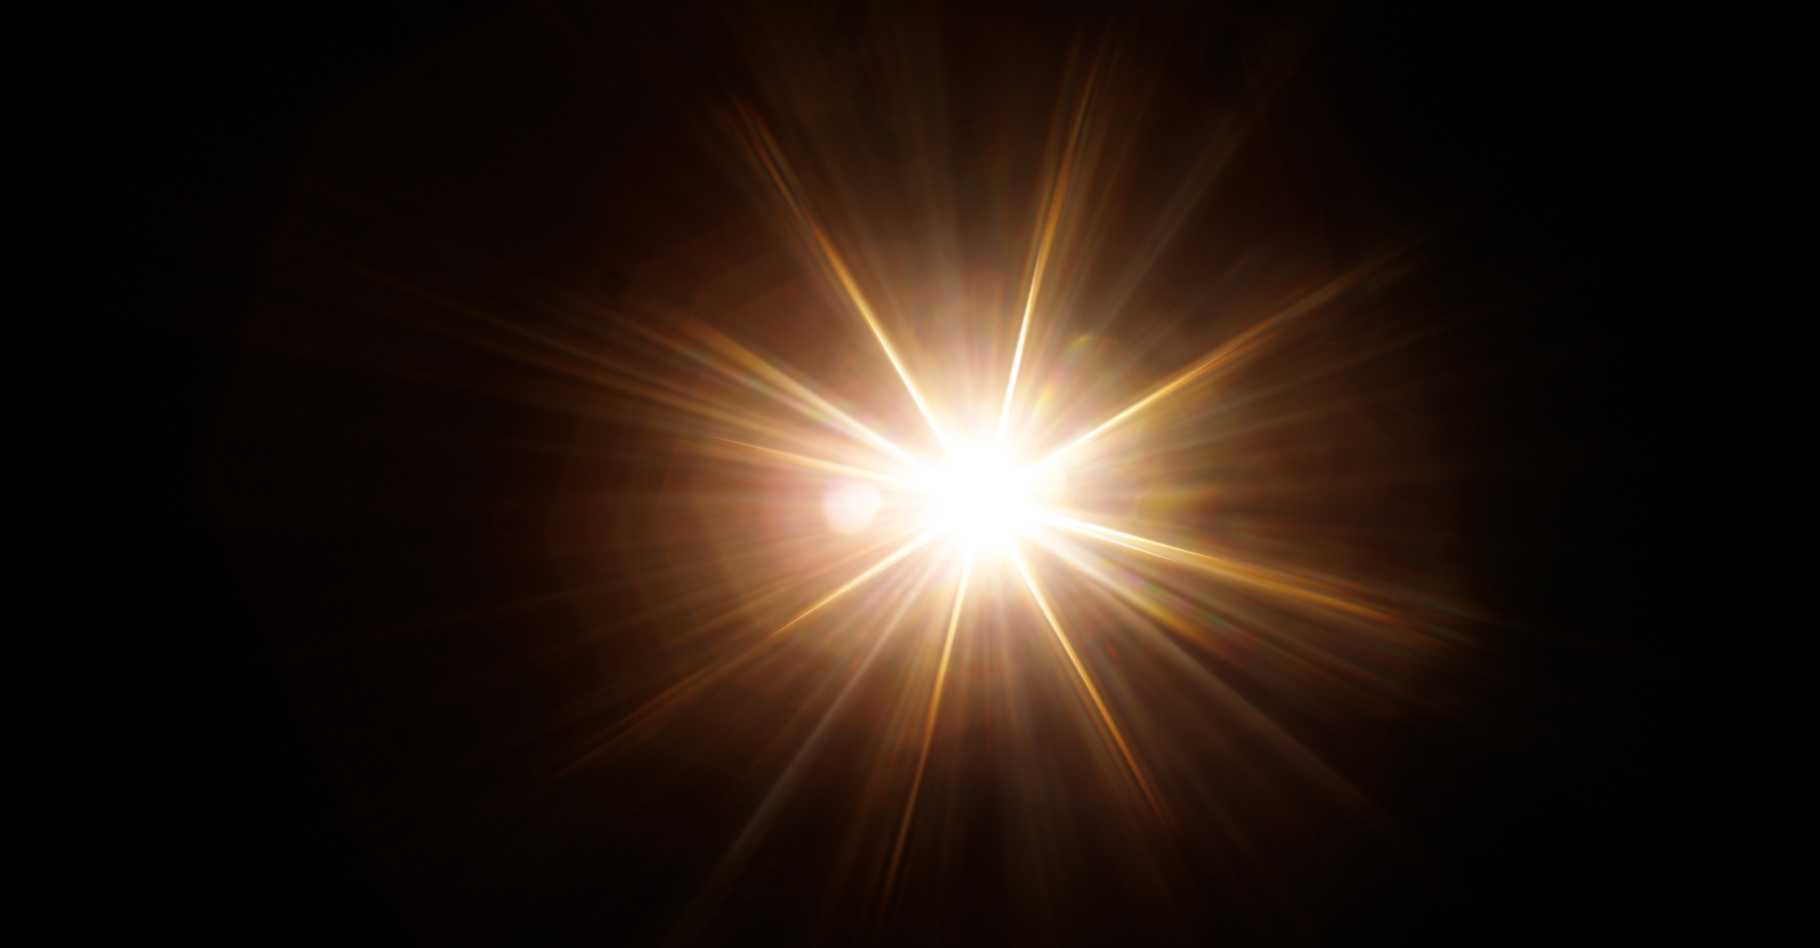 Des chercheurs de l’Observatoire royal de Belgique suggèrent que des ondes magnétiques nouvellement découvertes pourraient être à l’origine du chauffage de la couronne solaire. © KDdesignphoto, Adobe Stock